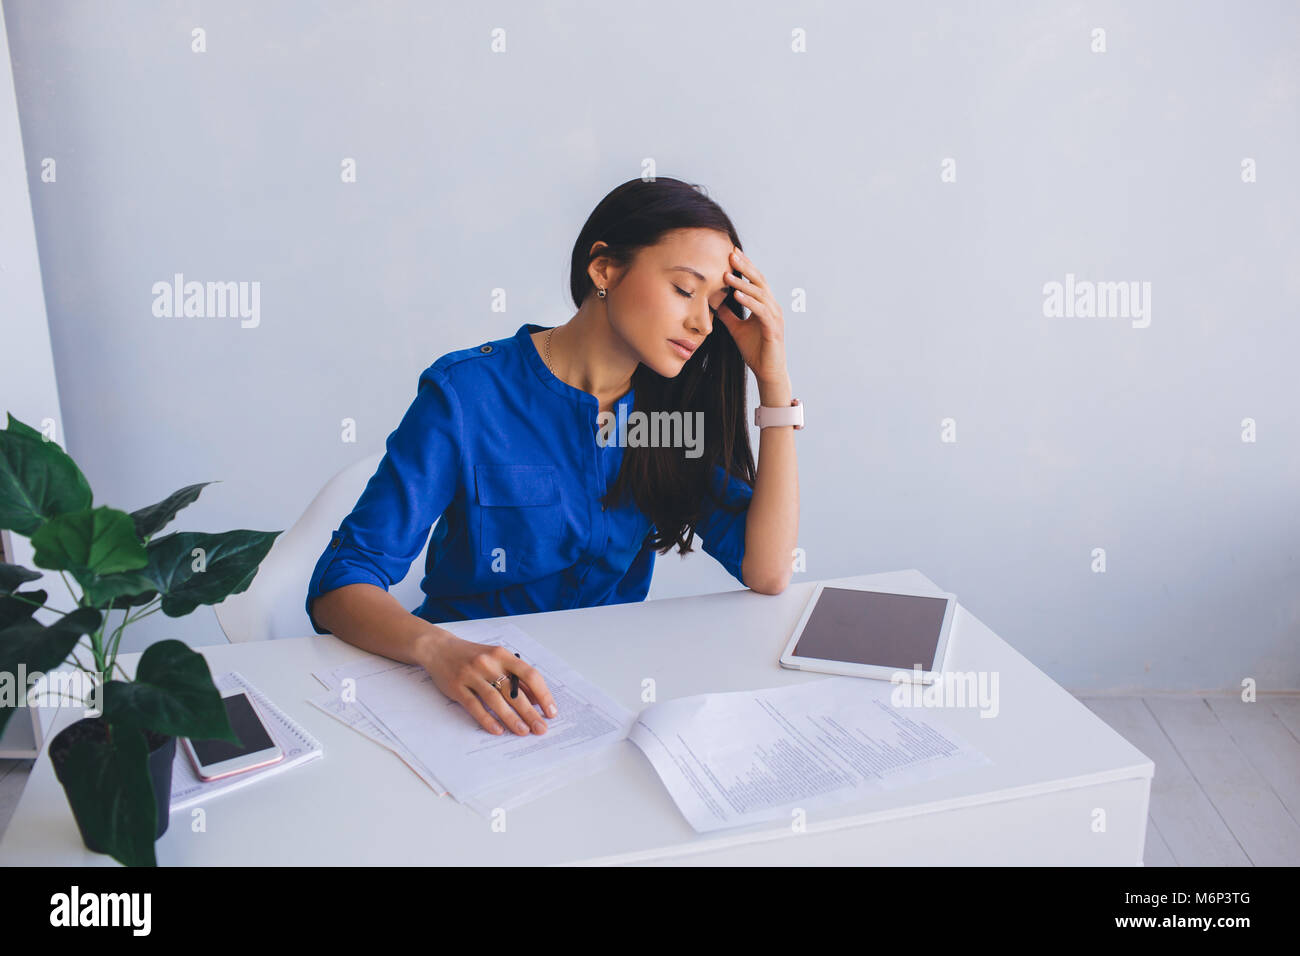 La mujer siente el estrés y el cansancio del trabajo Foto de stock